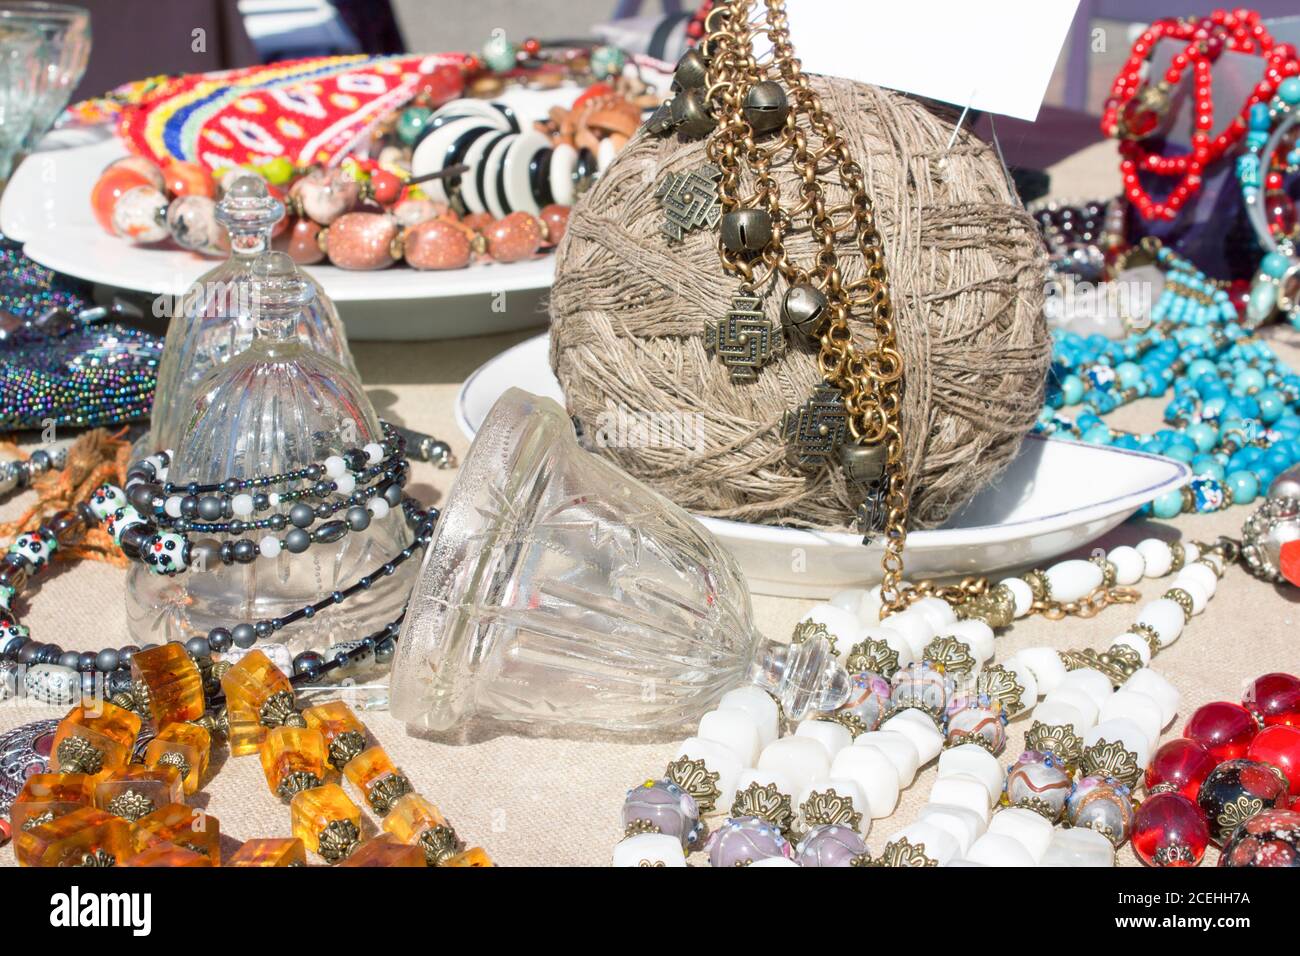 Verschiedene Antiquitäten auf Flohmarkt oder Festival - Sammlerstück Glas und Kristall Glocken, Vintage Amber und Metall Halskette und andere Vintage-Dinge Stockfoto